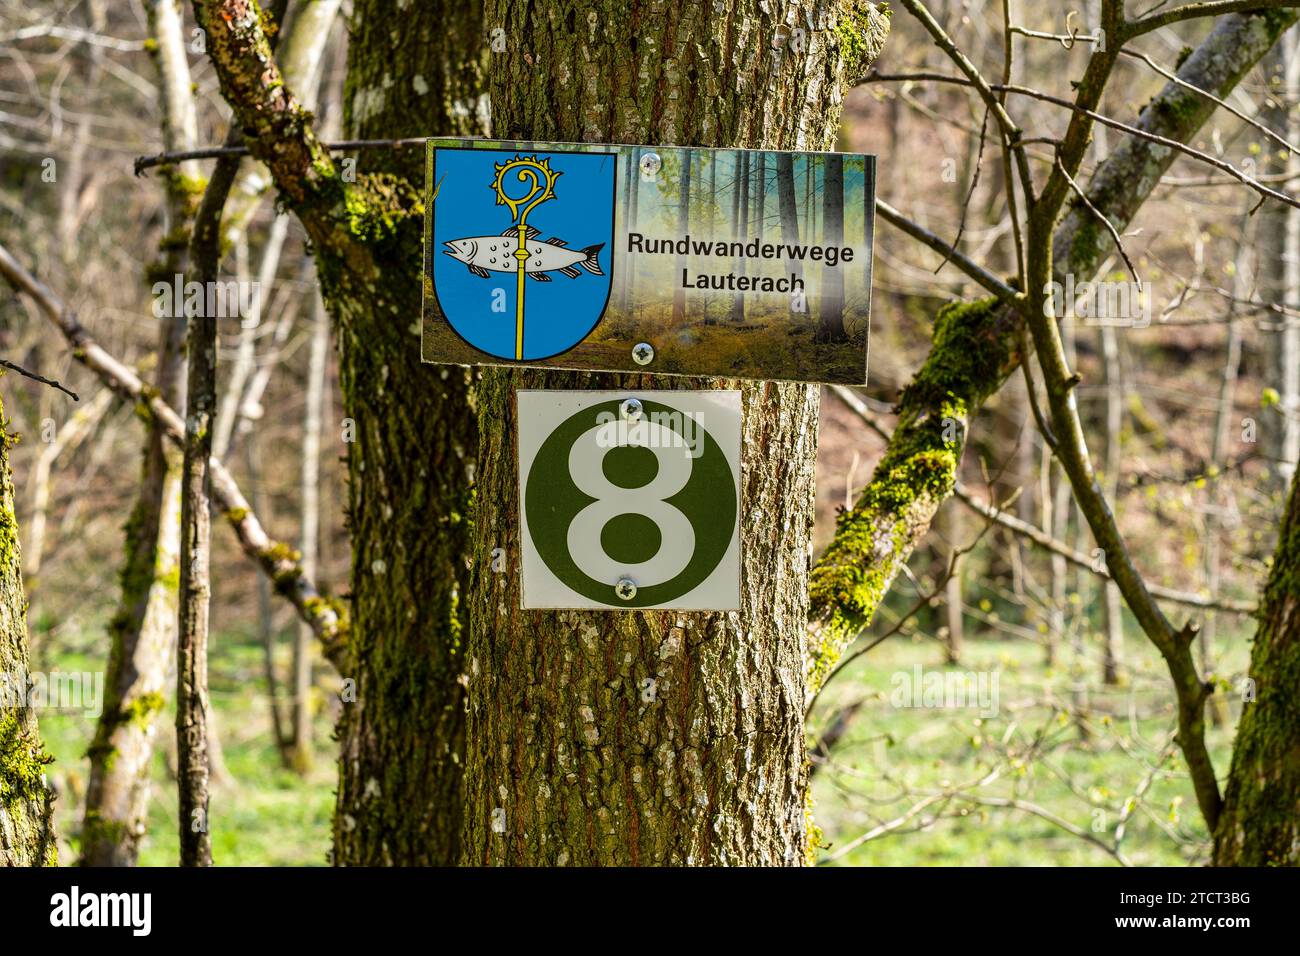 Schilder Rundwanderwege Lauterach und 8 an einem Baum, Wandergebiet bei Lauterach, Munderkingen, Schwäbische Alb, Baden-Württemberg, Deutschland. Stockfoto